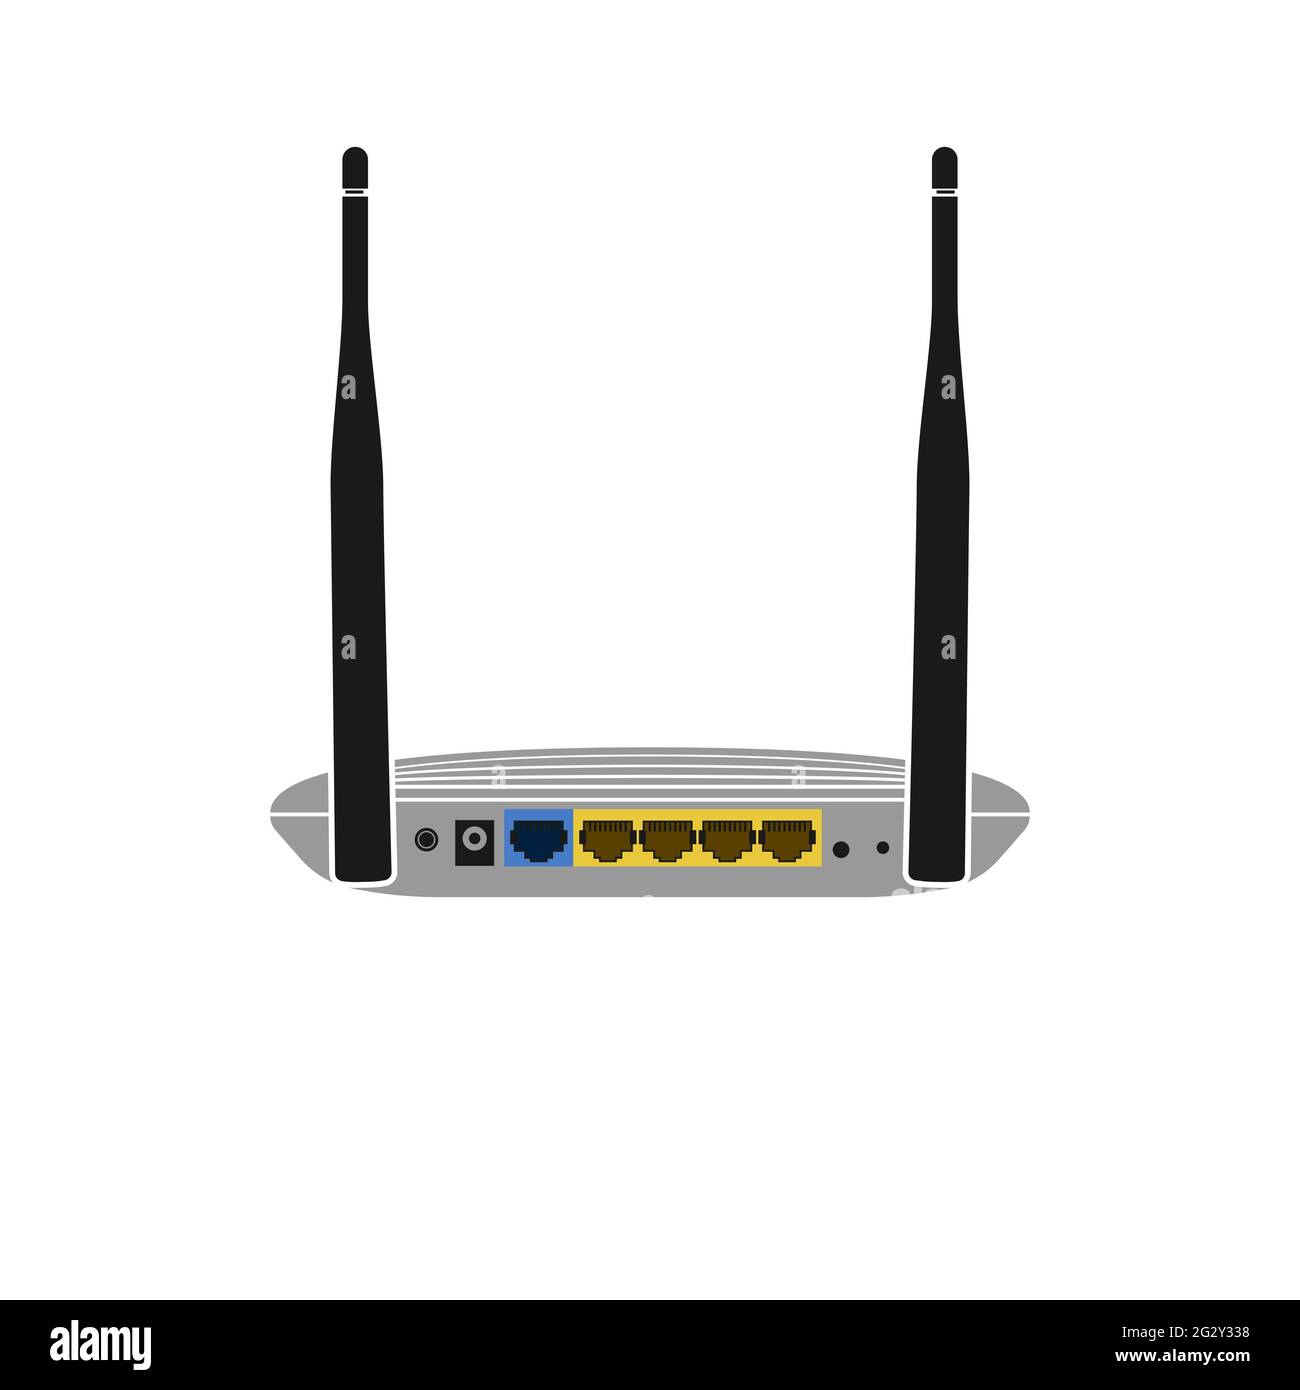 Icona vettoriale realistica sul retro di un router Wi-Fi con due antenne e porte per il collegamento di un cavo Internet. Internet wireless. Illustrazione Vettoriale